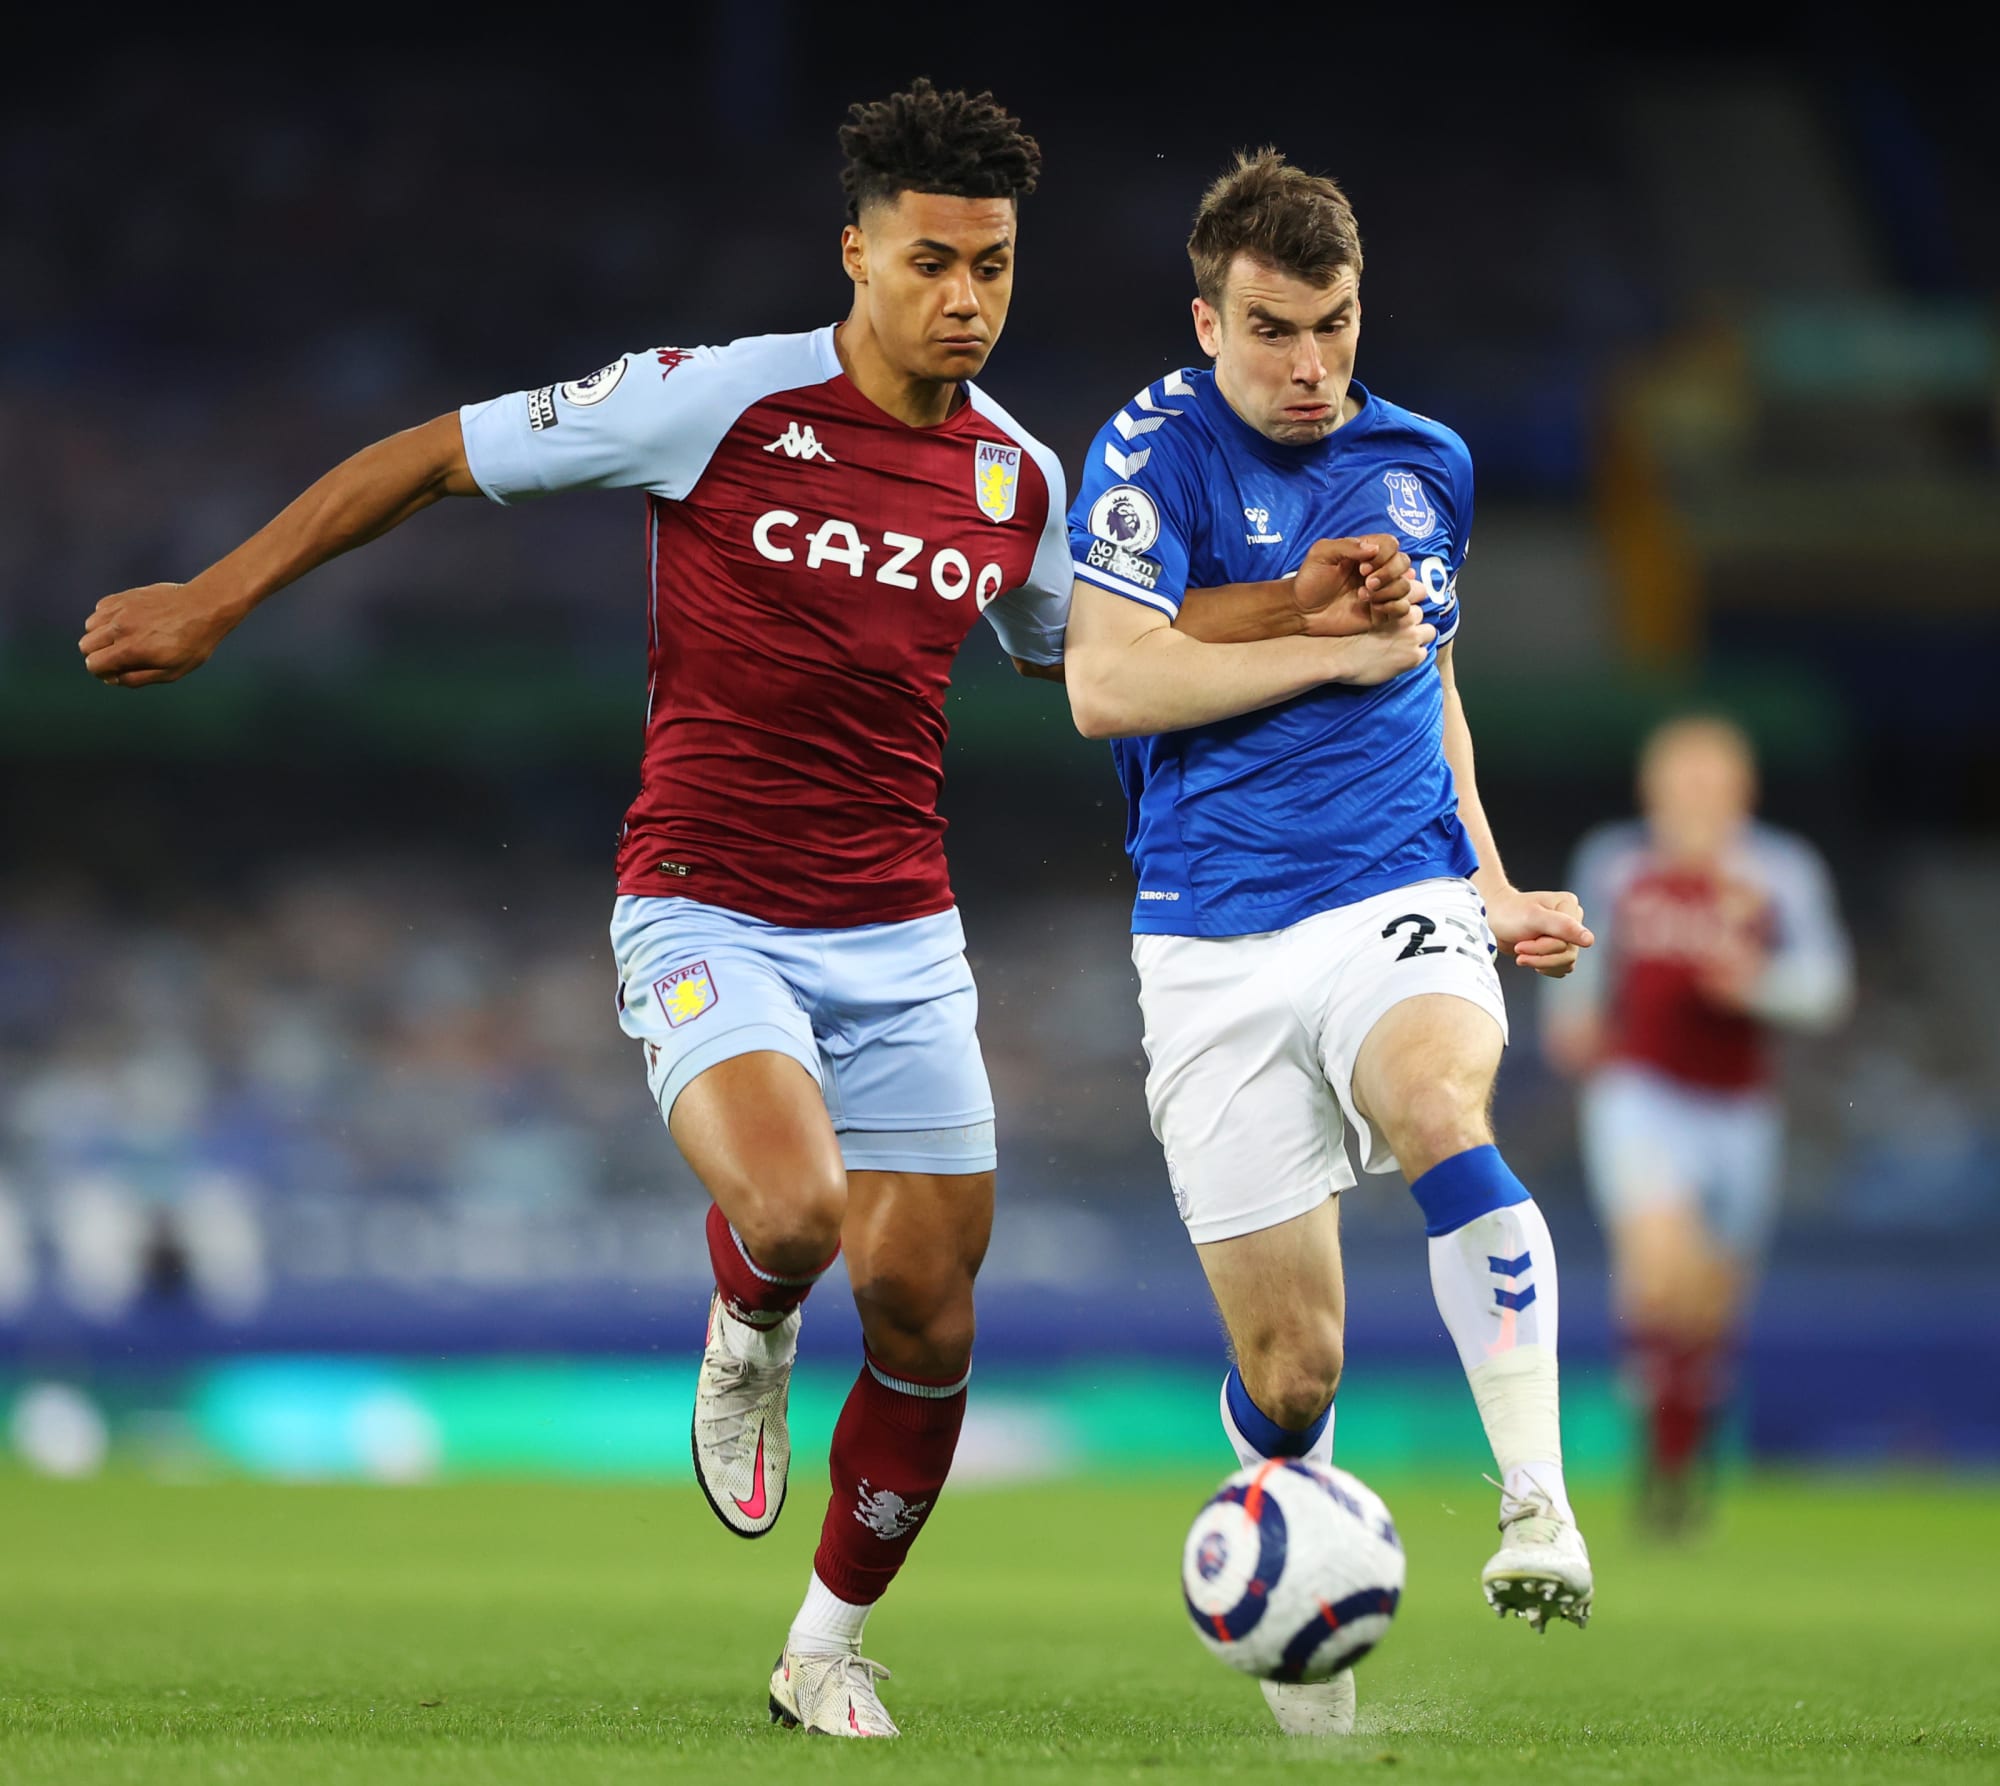 Three takeaways from Everton 1 Aston Villa 2 on Saturday night